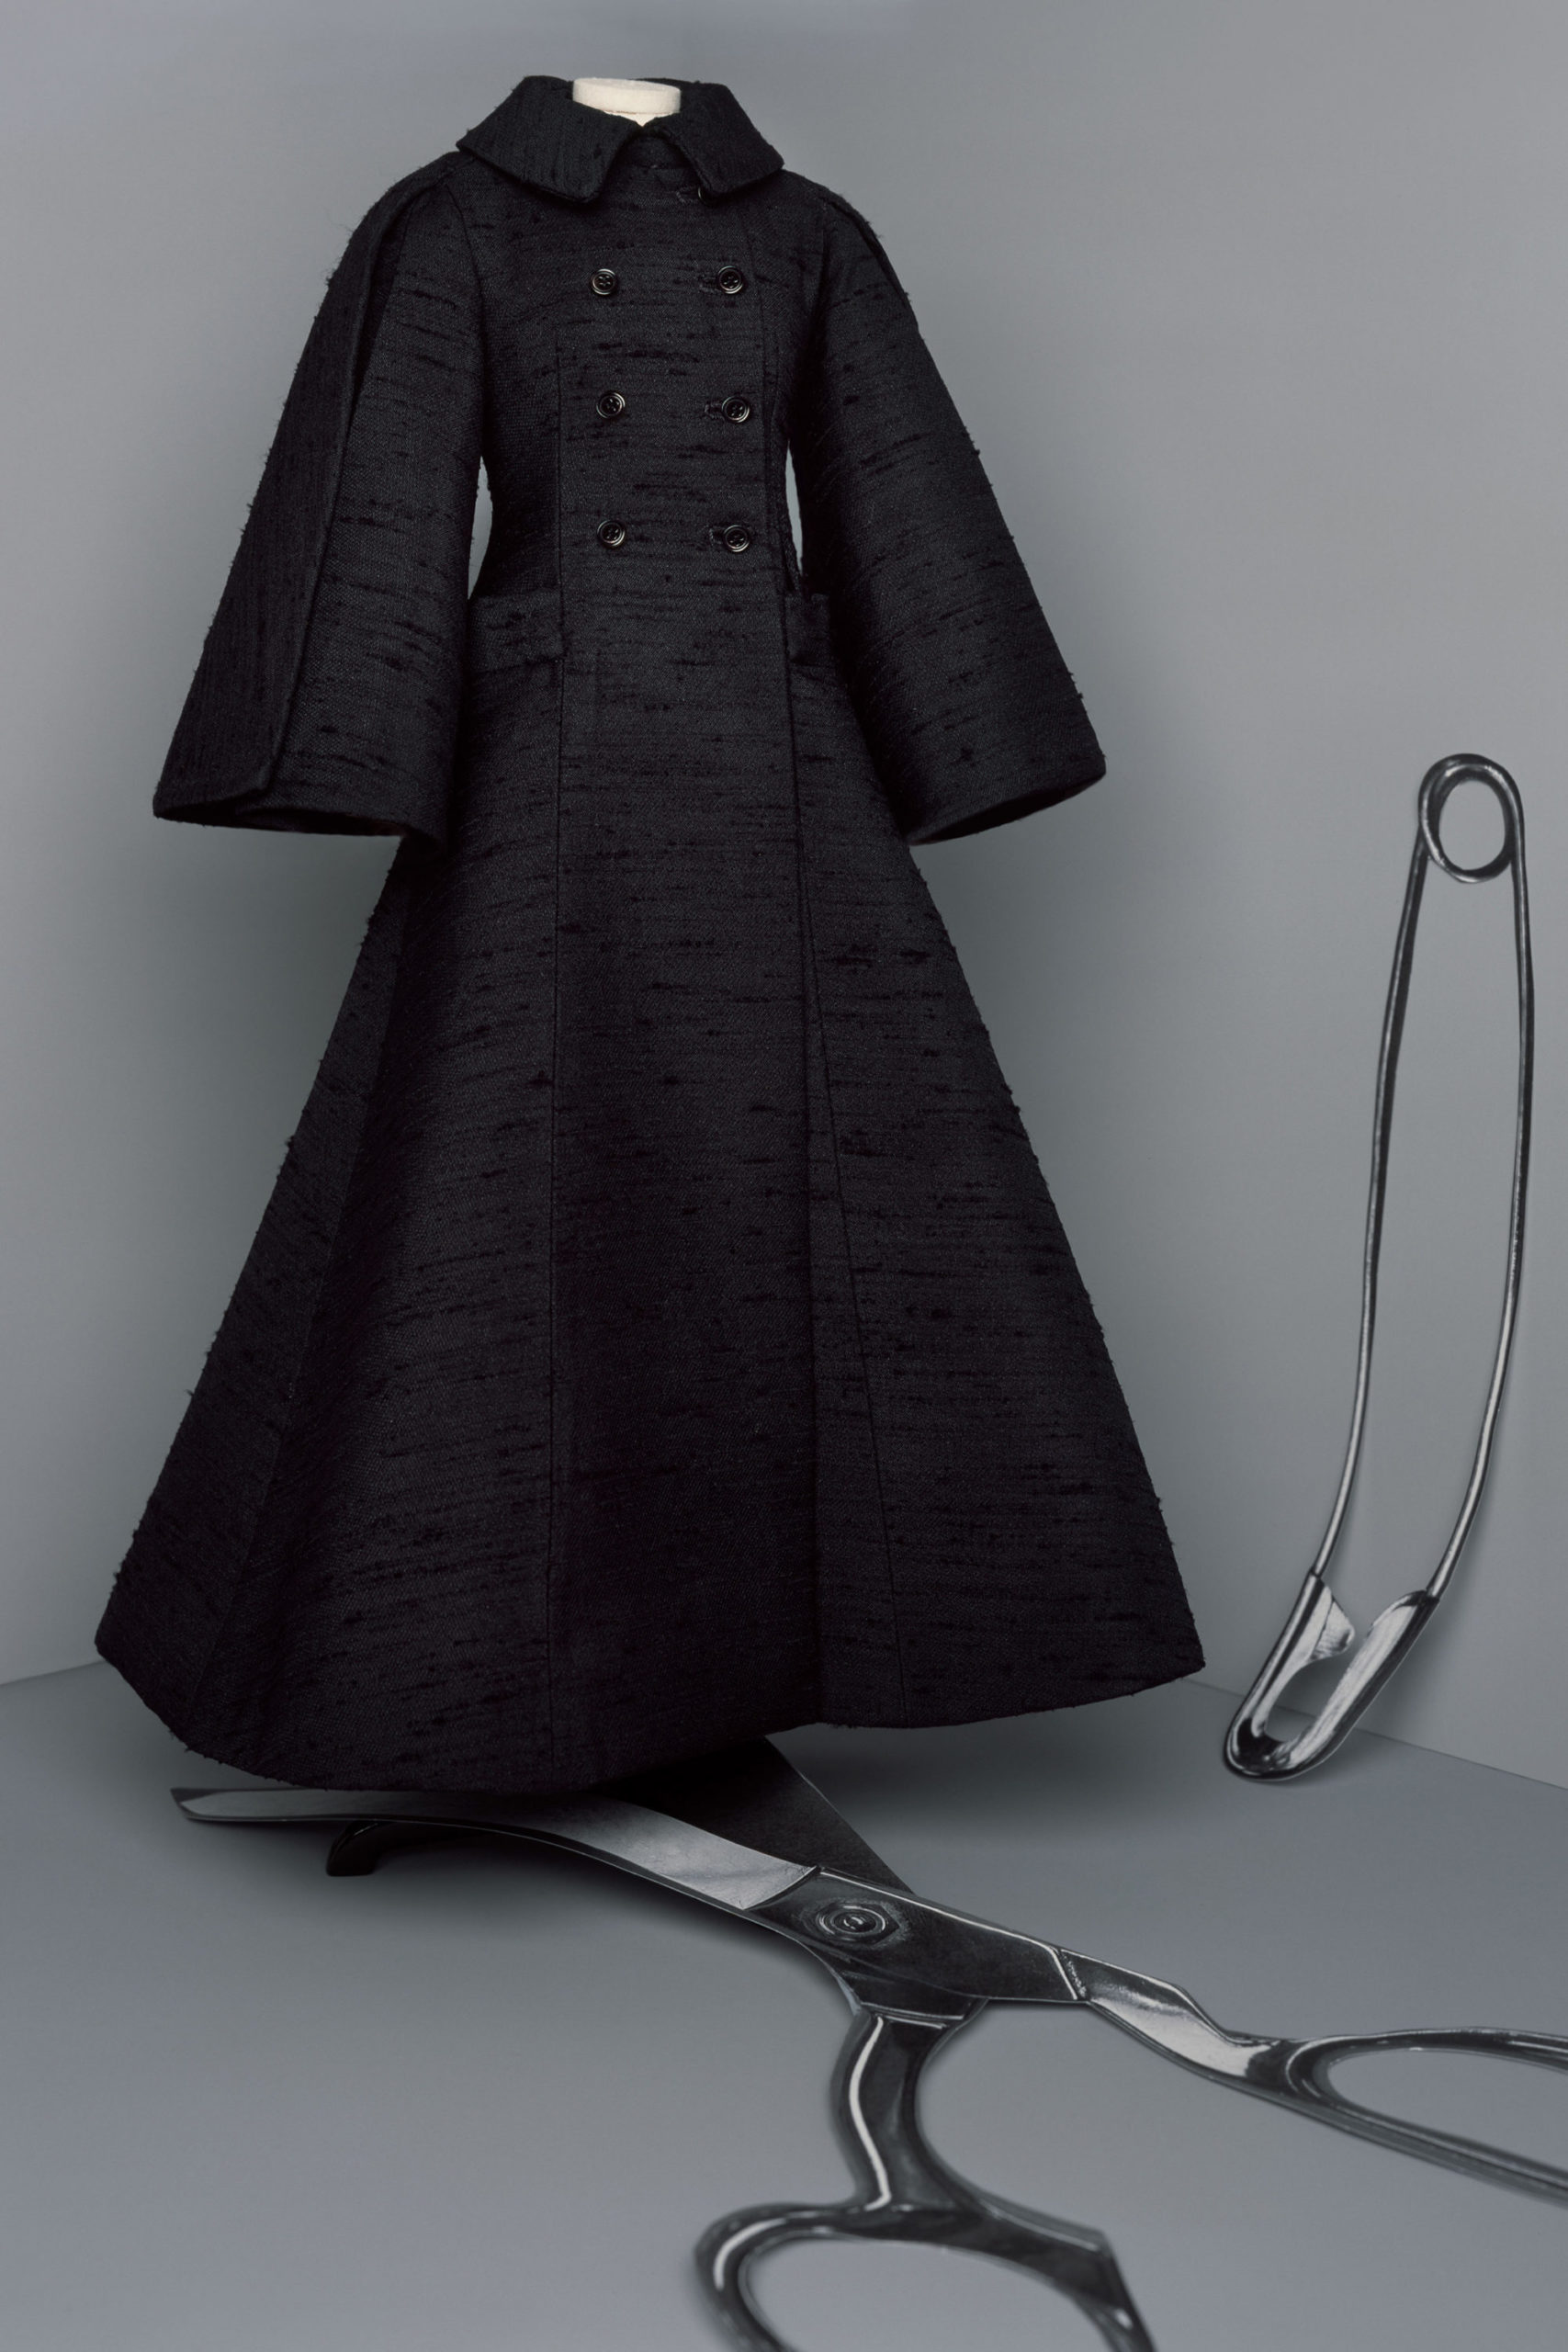 Платье с расклешённой статичной юбкой, платье выпускницы от Christian Dior кутюр модель 2021 года